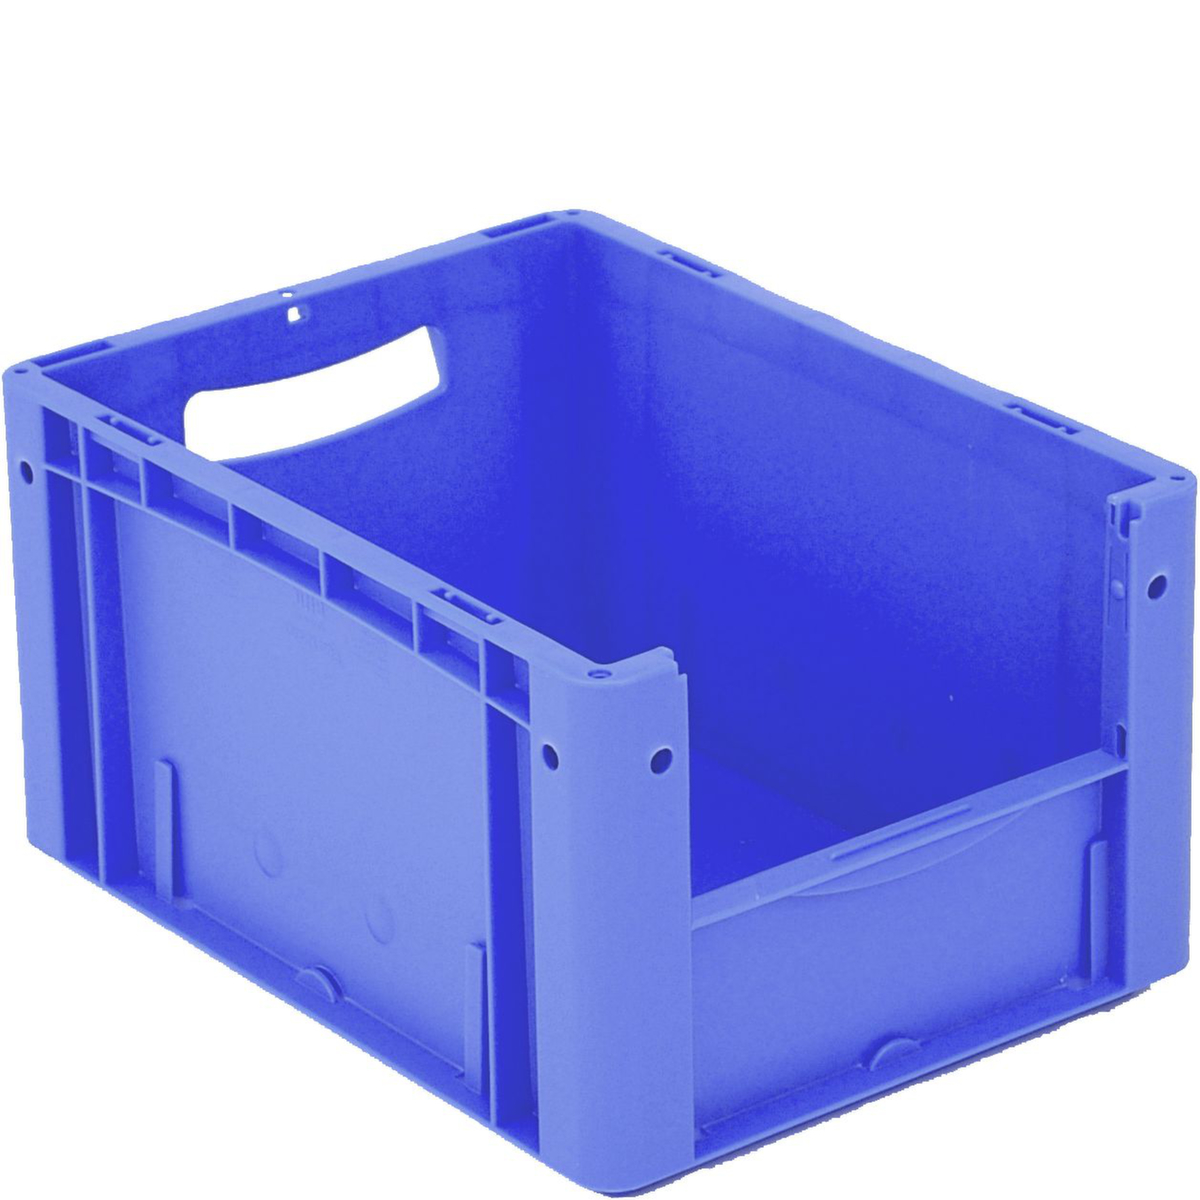 Euronorm zichtbare opslagcontainer met toegangsopening, blauw, HxLxB 220x400x300 mm  ZOOM